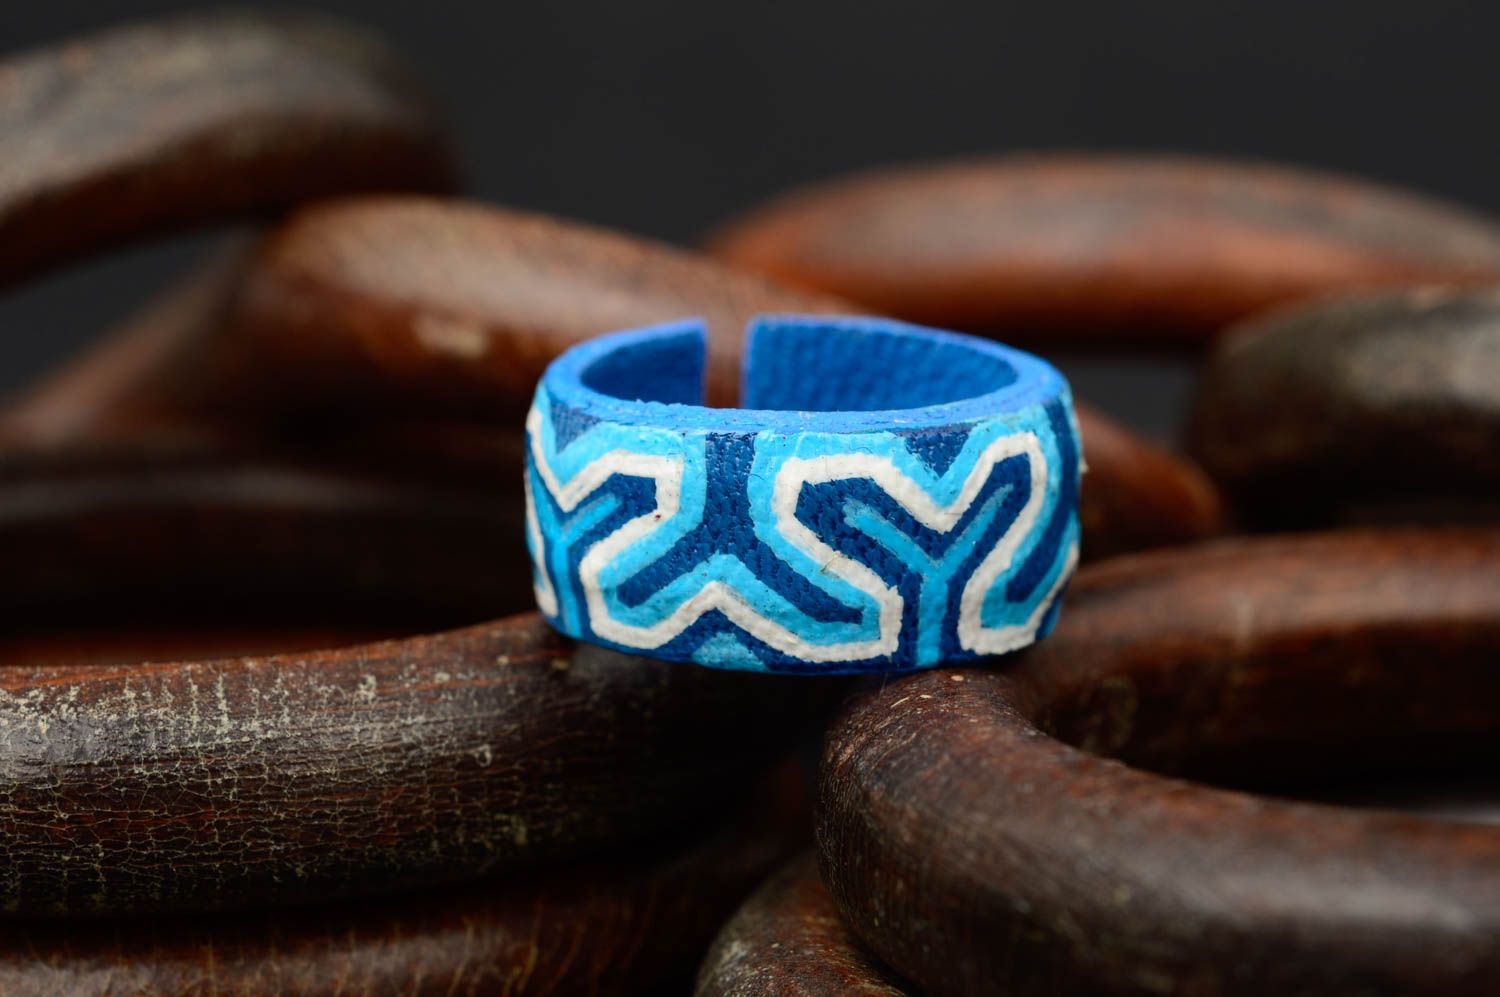 Кольцо ручной работы кожаный аксессуар голубой оригинальное кольцо с росписью фото 1